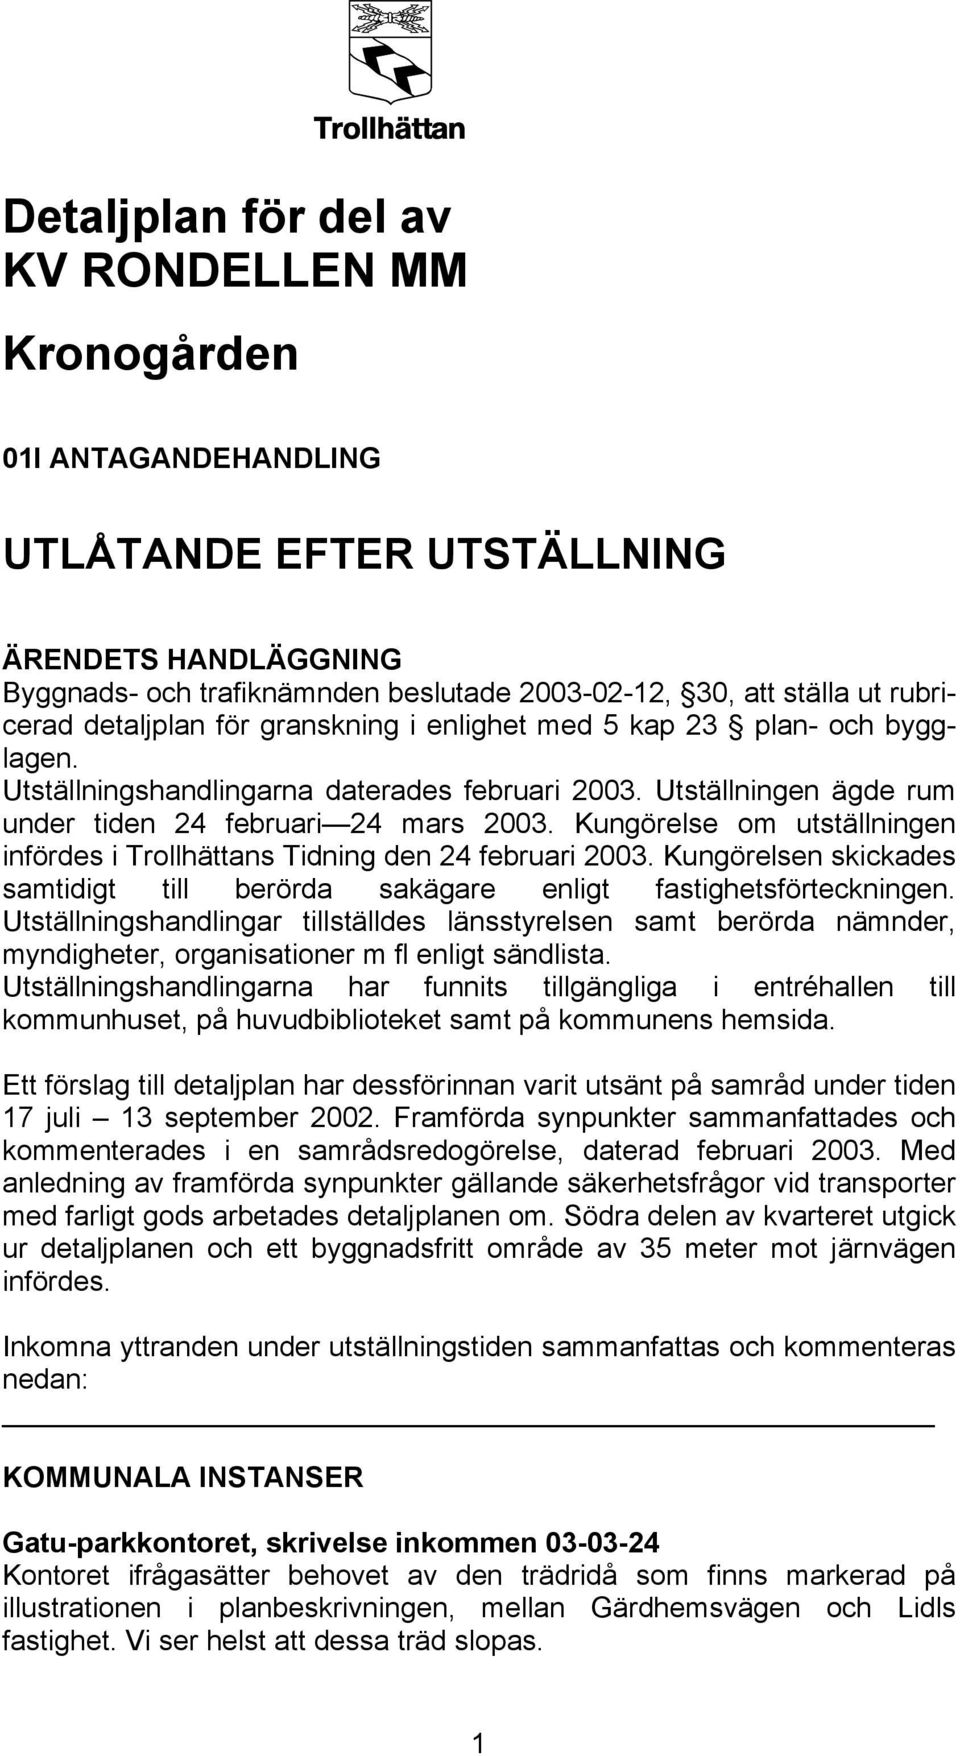 Kungörelse om utställningen infördes i Trollhättans Tidning den 24 februari 2003. Kungörelsen skickades samtidigt till berörda sakägare enligt fastighetsförteckningen.